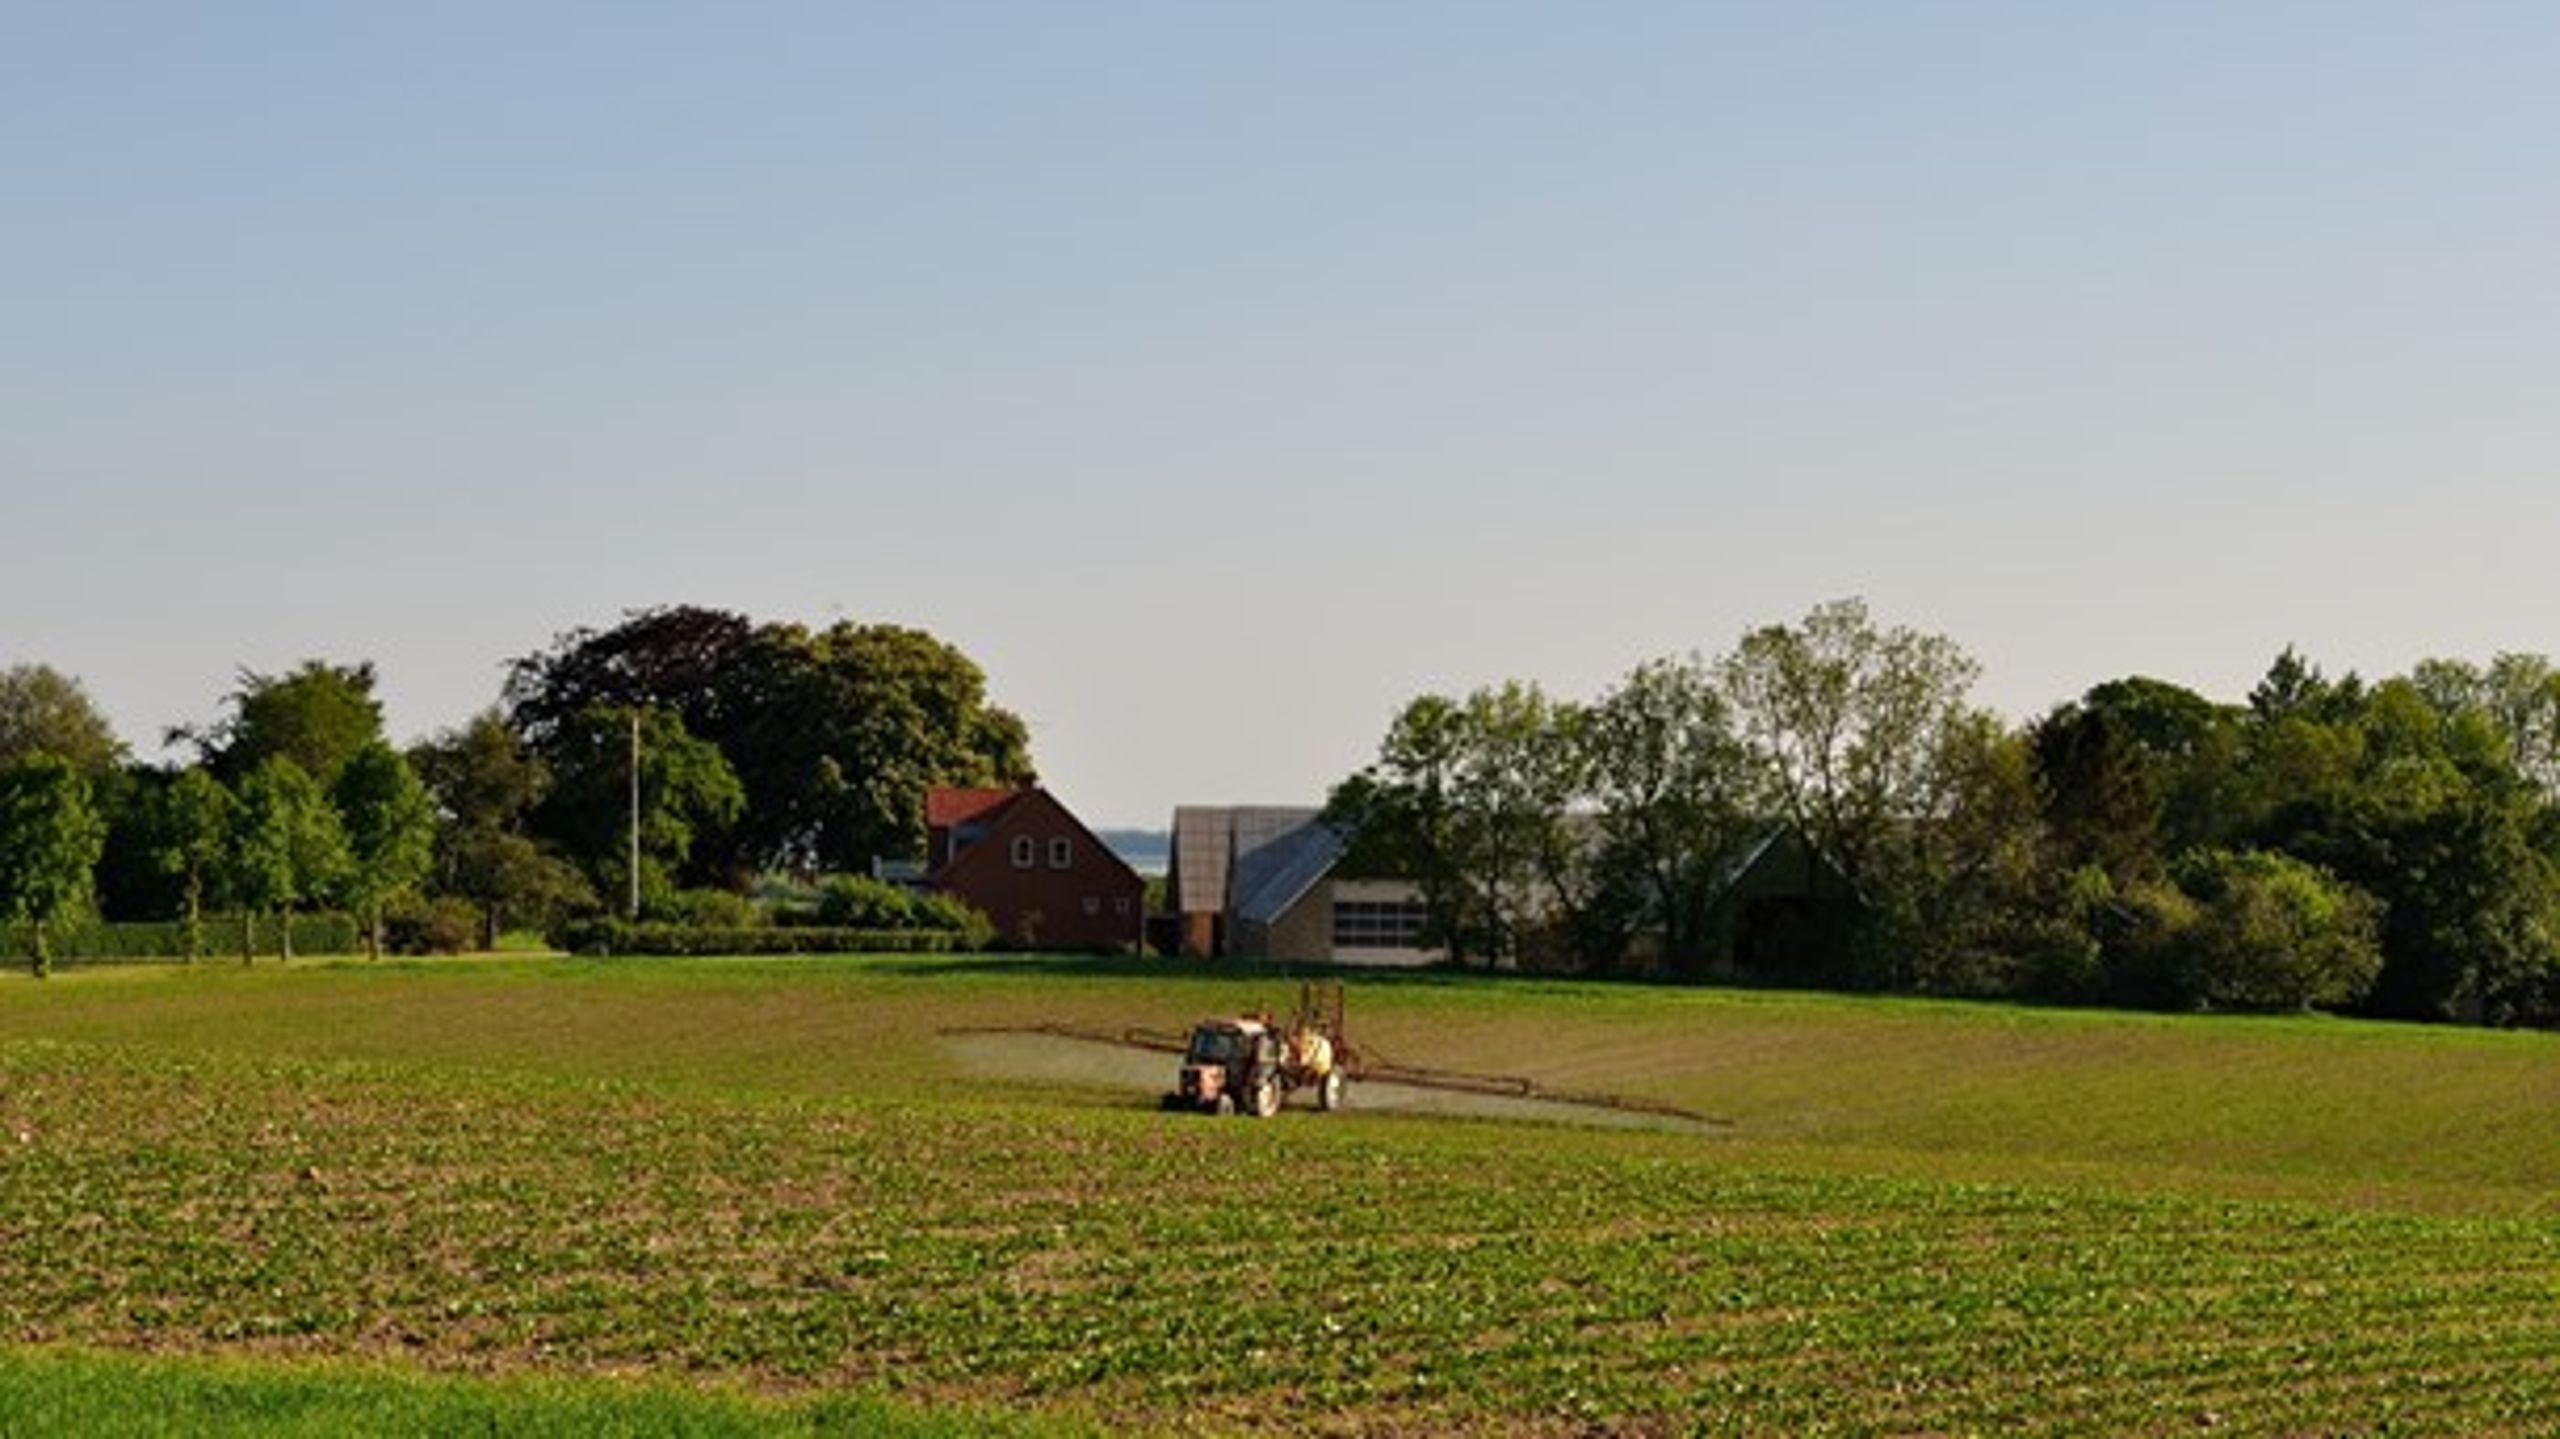 Concito har muligheden for at bidrage kreativt til klimakonsensus i landbruget, skriver Per Kølster og Paul Holmbeck.